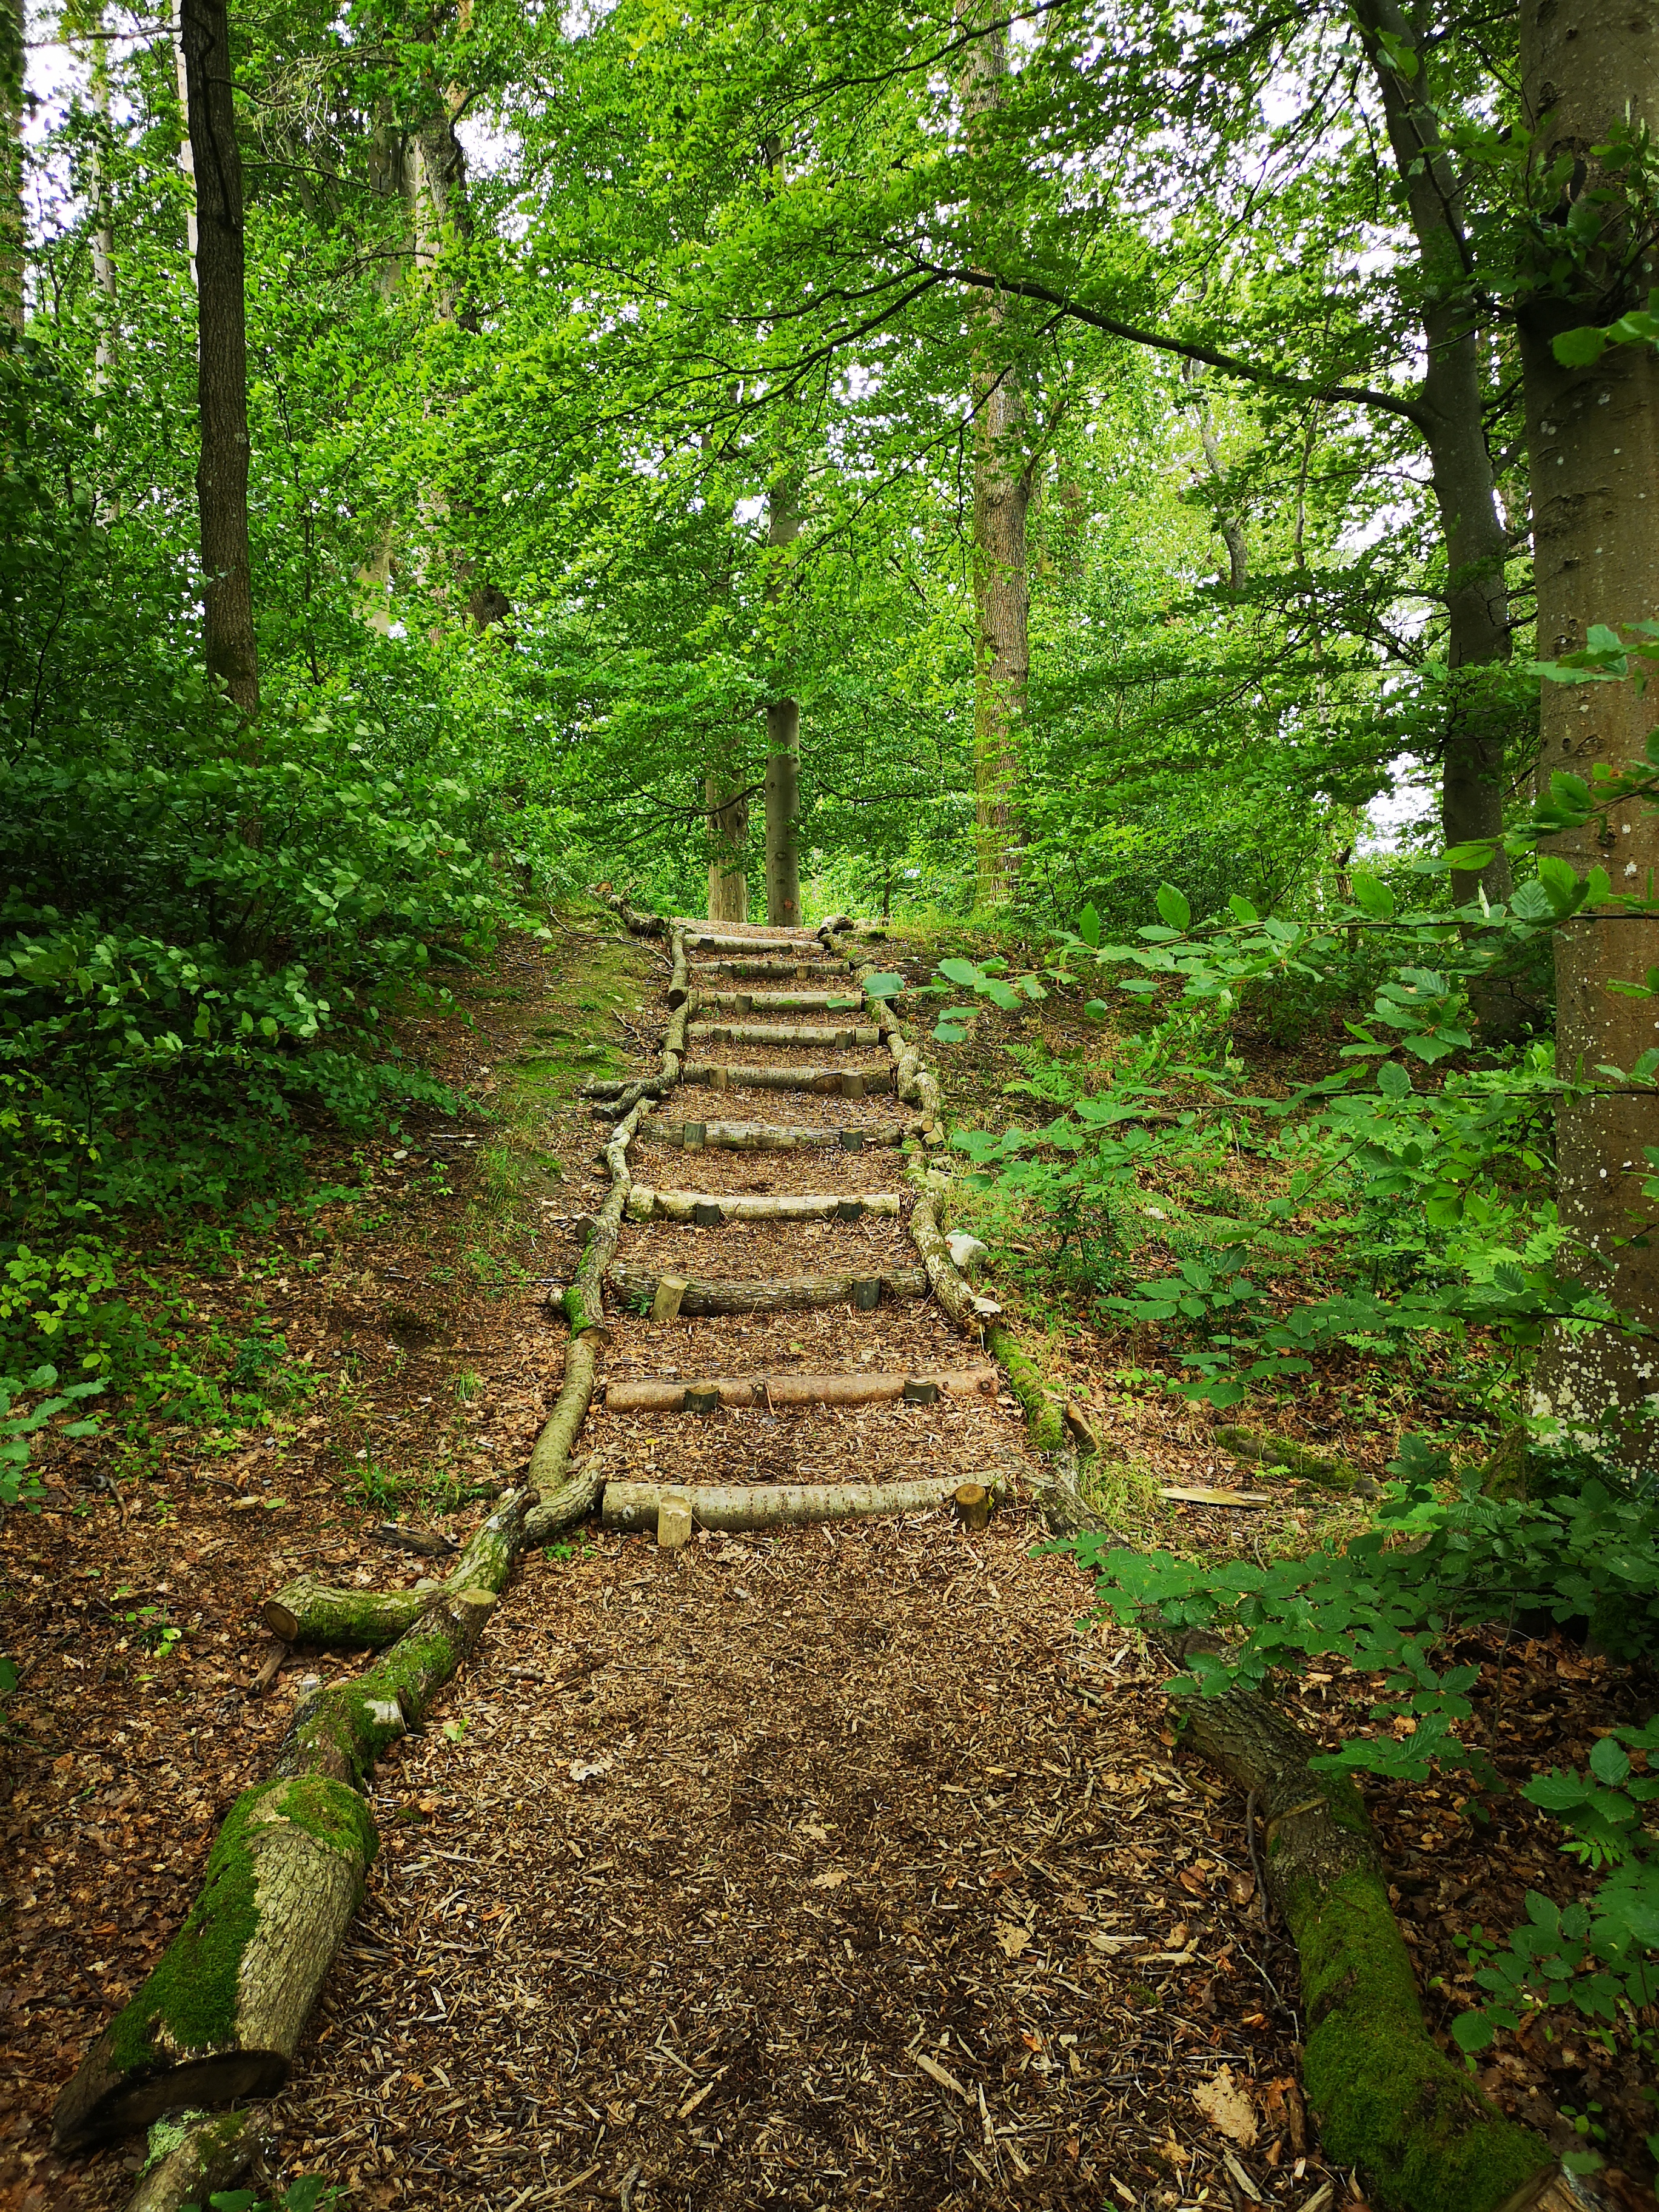 Natural steps made from fallen debris through Birkett Wood at Brockhole 